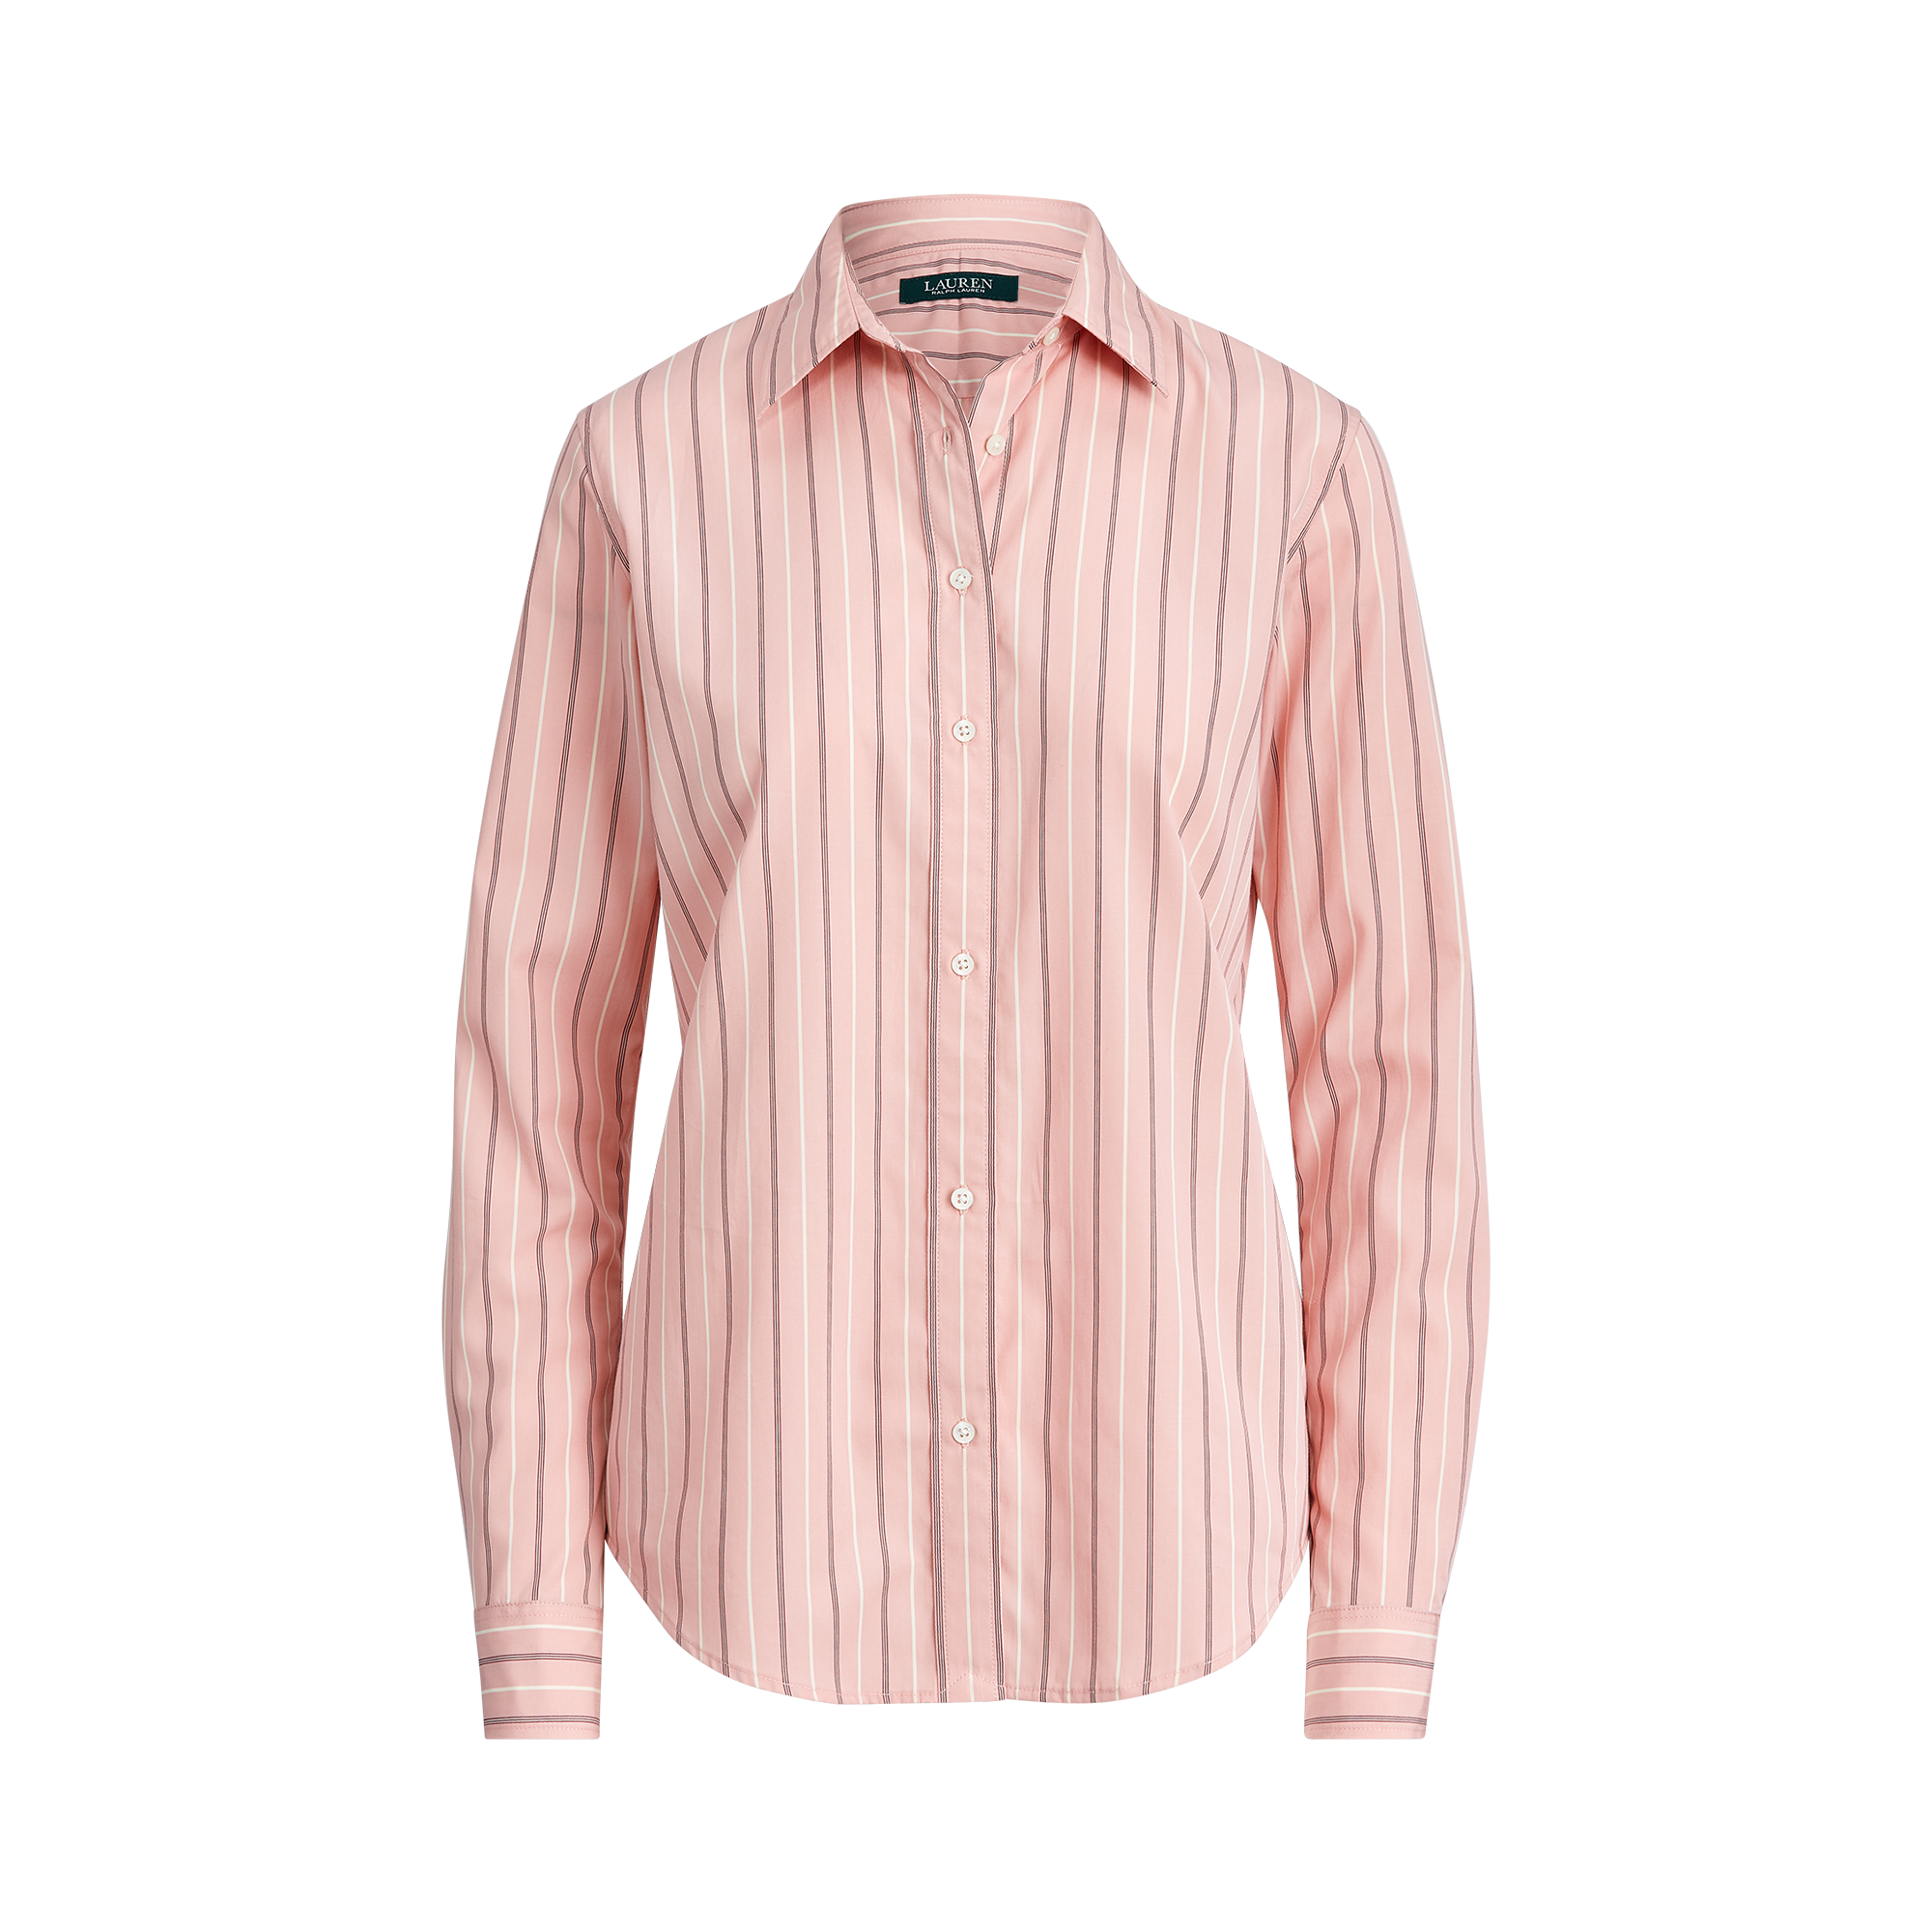 Ralph Lauren Striped Cotton Shirt. 1